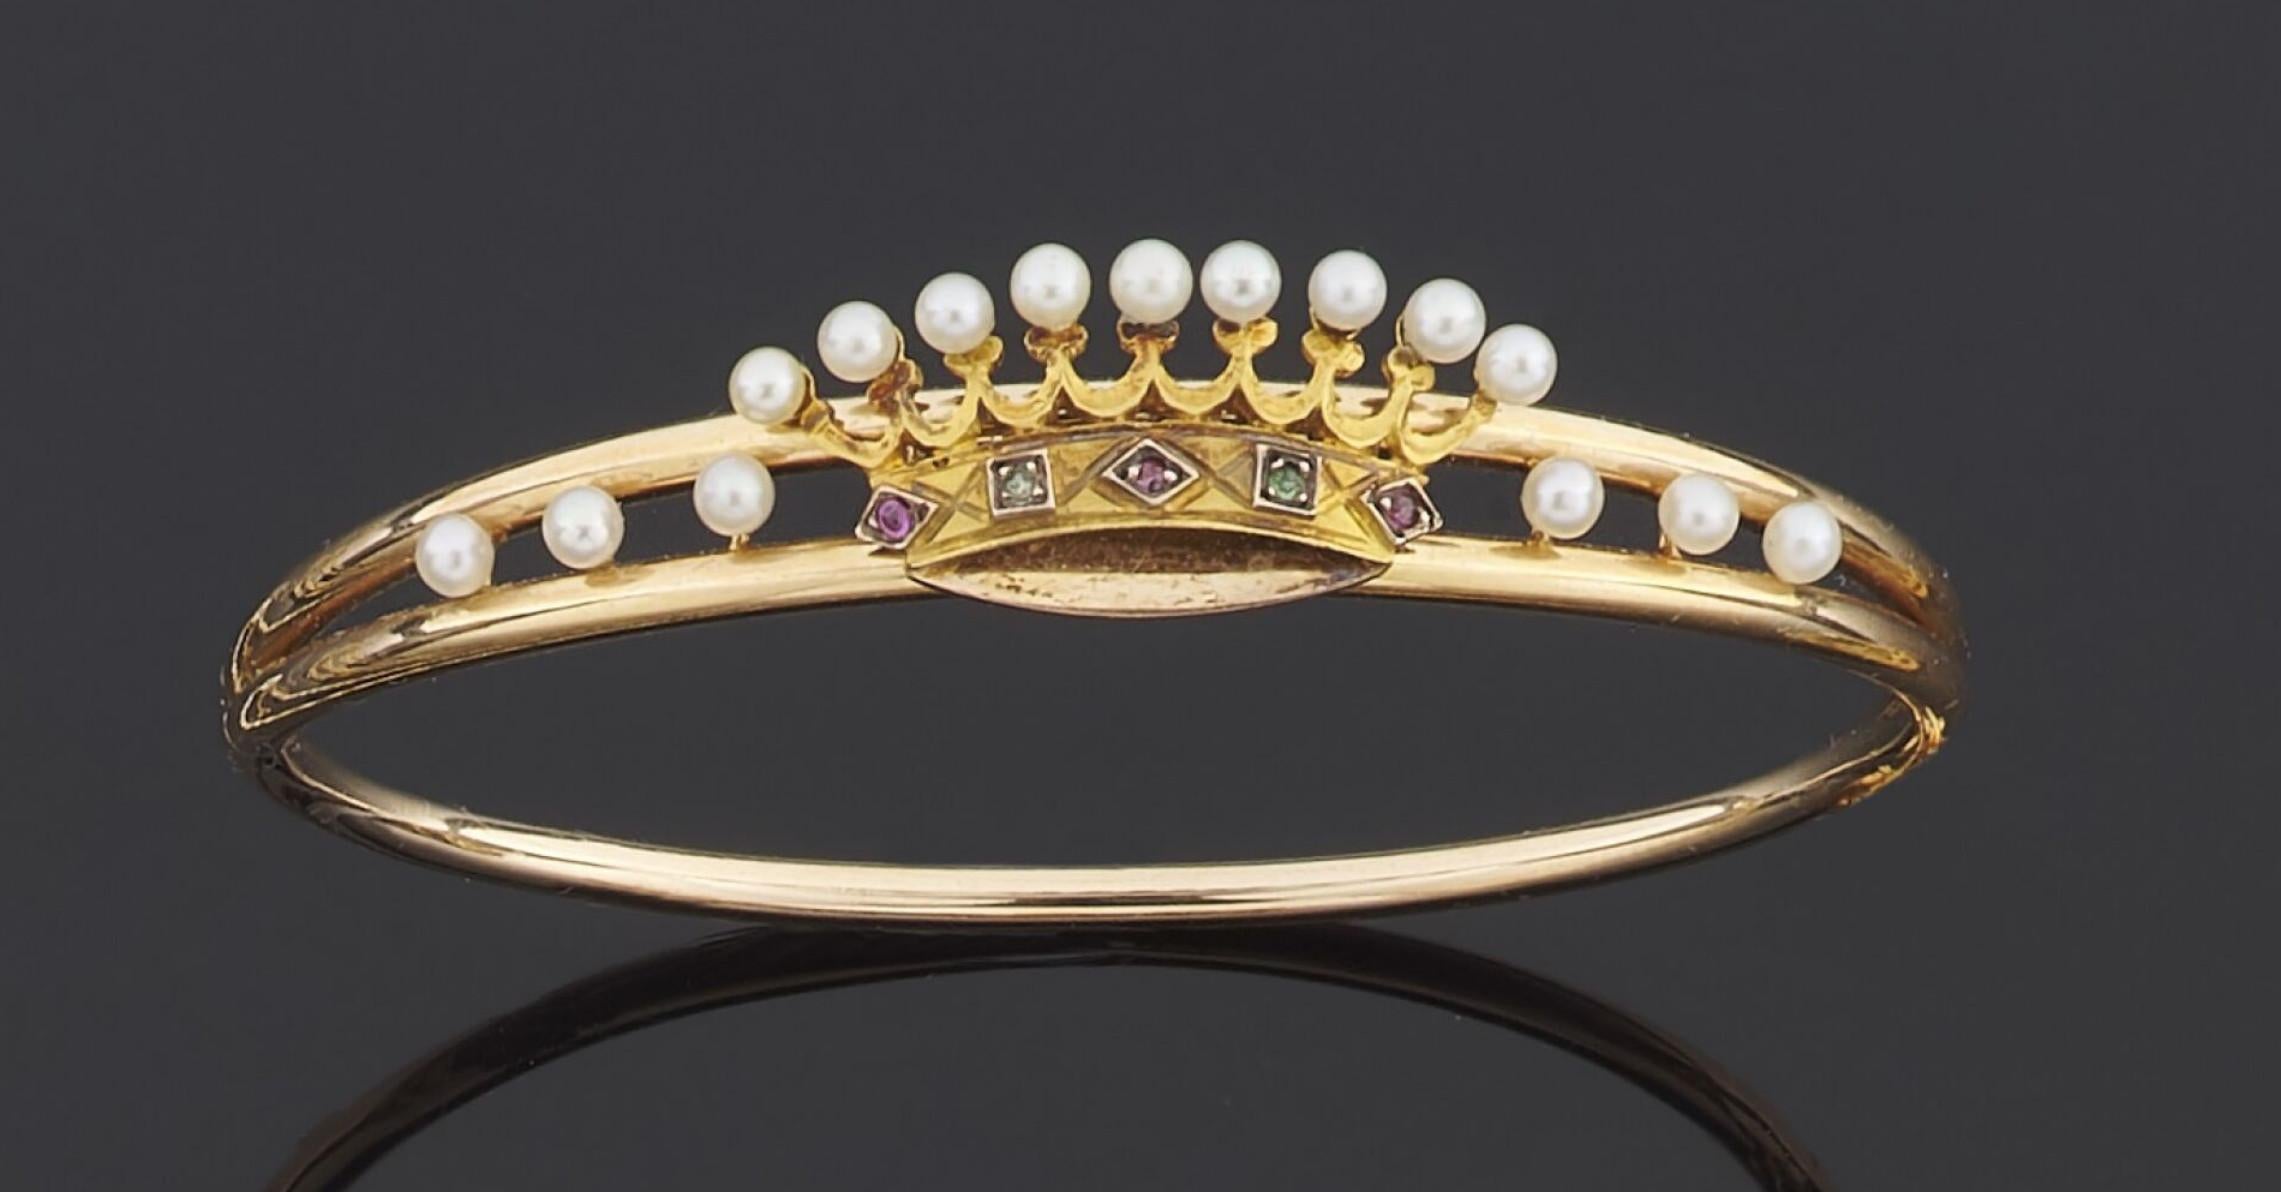 
Bracelet rigide ouvrant en or jaune 750 millièmes, le centre décoré d'une couronne ornée de petites perles de culture.
Diamètre : 5,8 cm
Poids : 8,4 g 